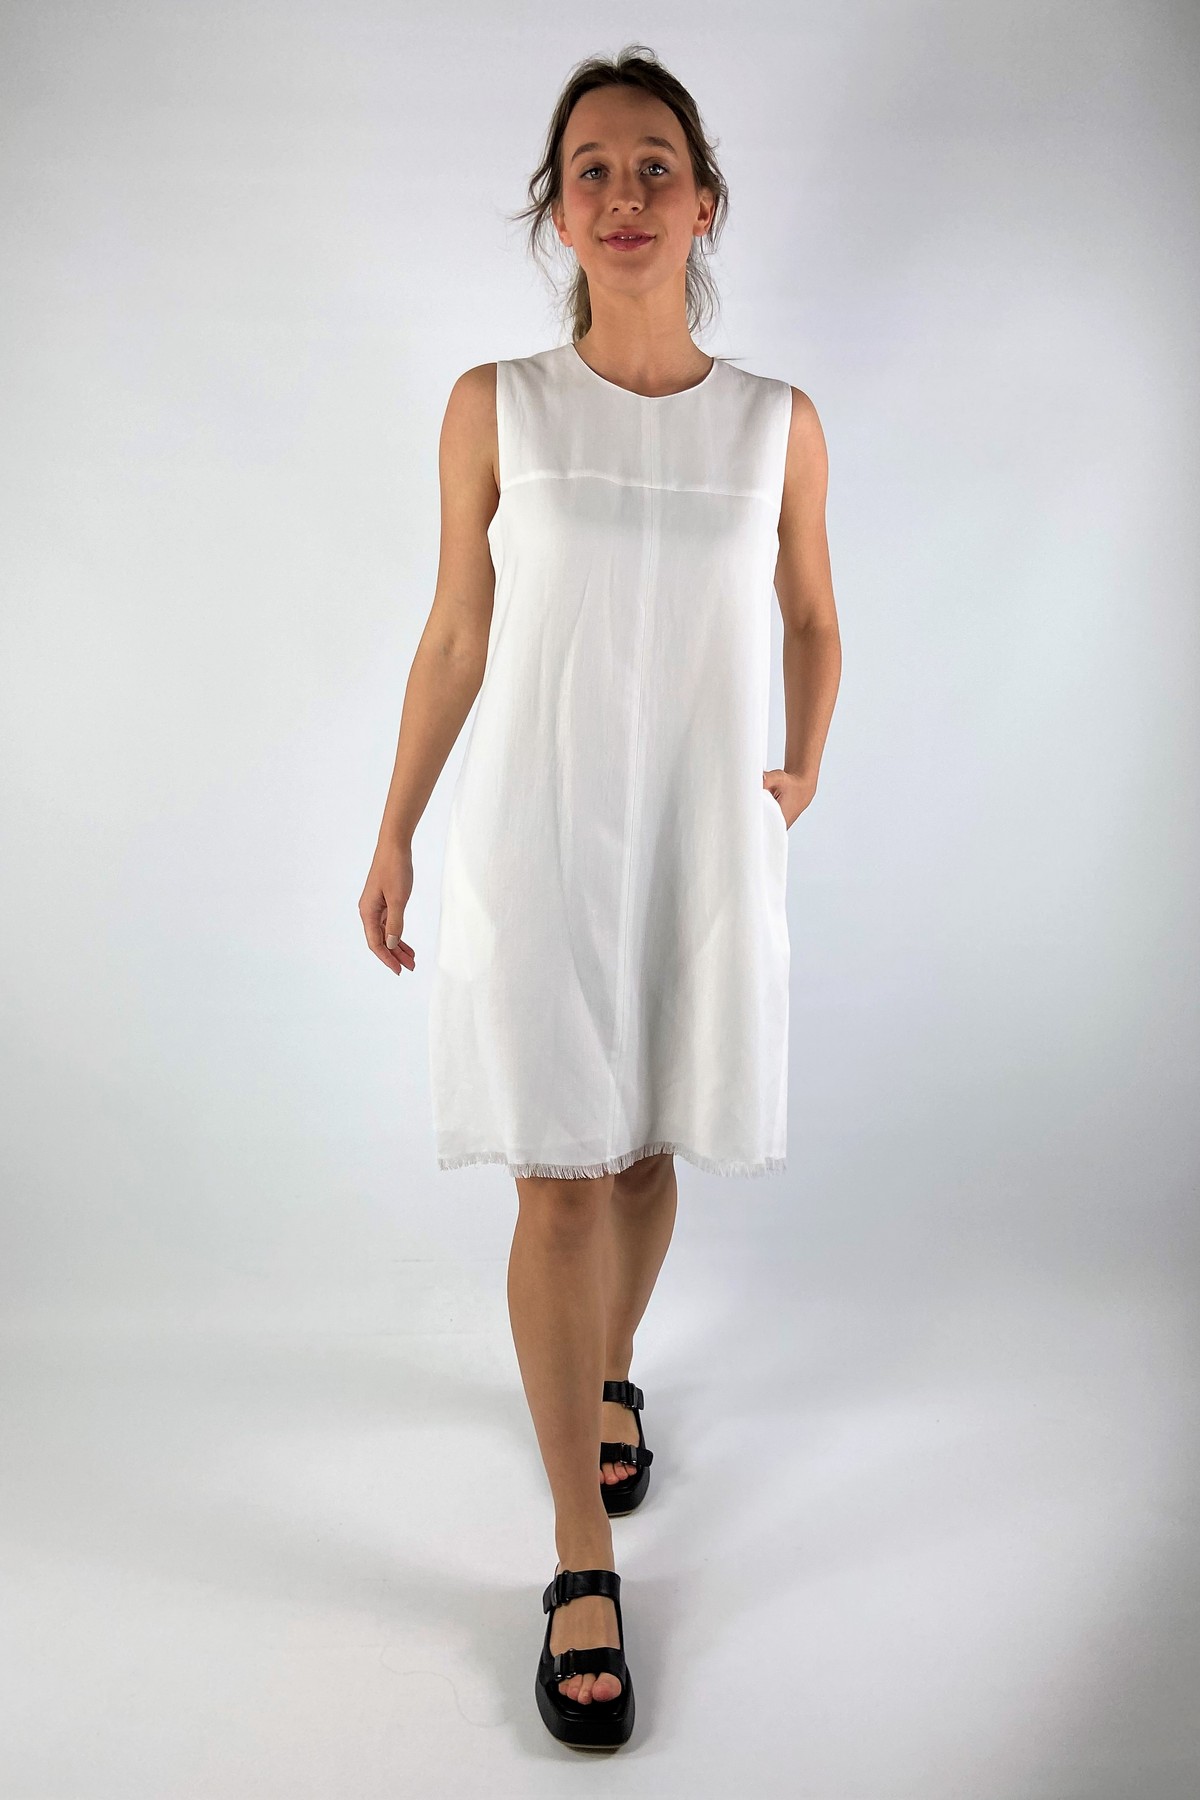 Kleed mouwloos franjes in de kleur wit van het merk Antonelli Firenze